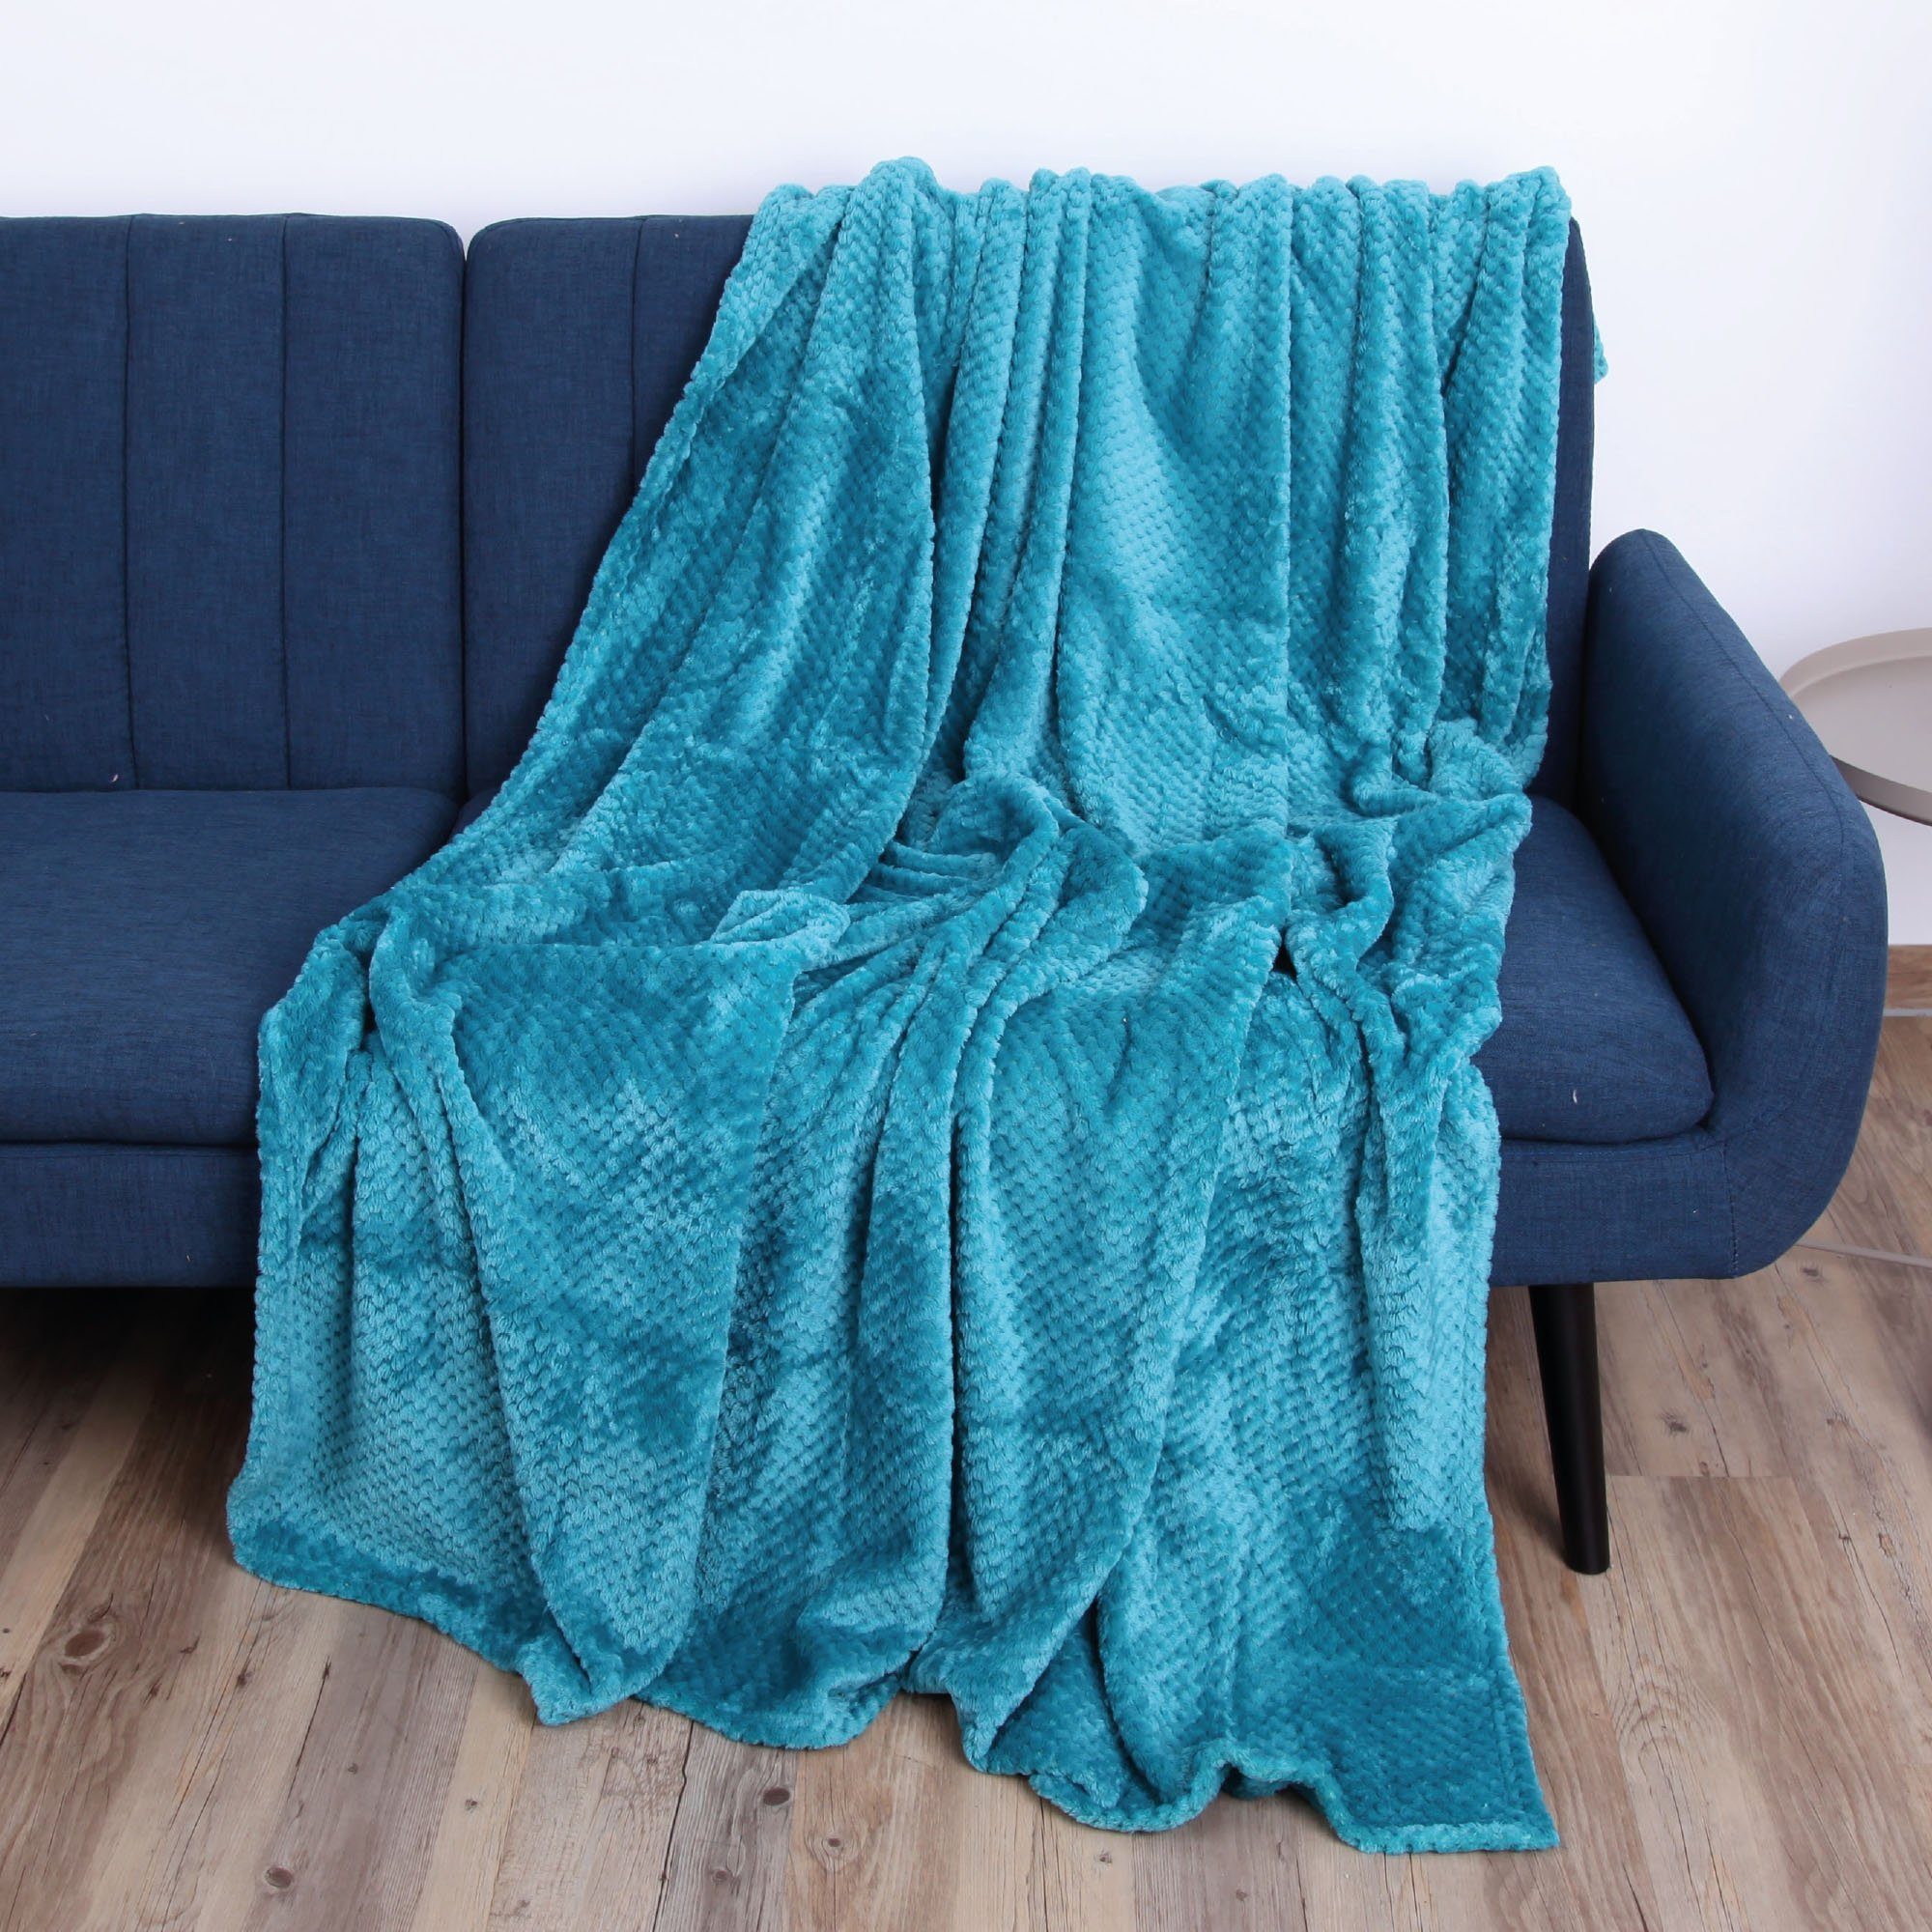 Flanell Decke Sofa, 150x200cm, für Bett, Kuscheldecke und Couch Petrol Flauschige Tagesdecke Decke Wohndecke Bestlivings,